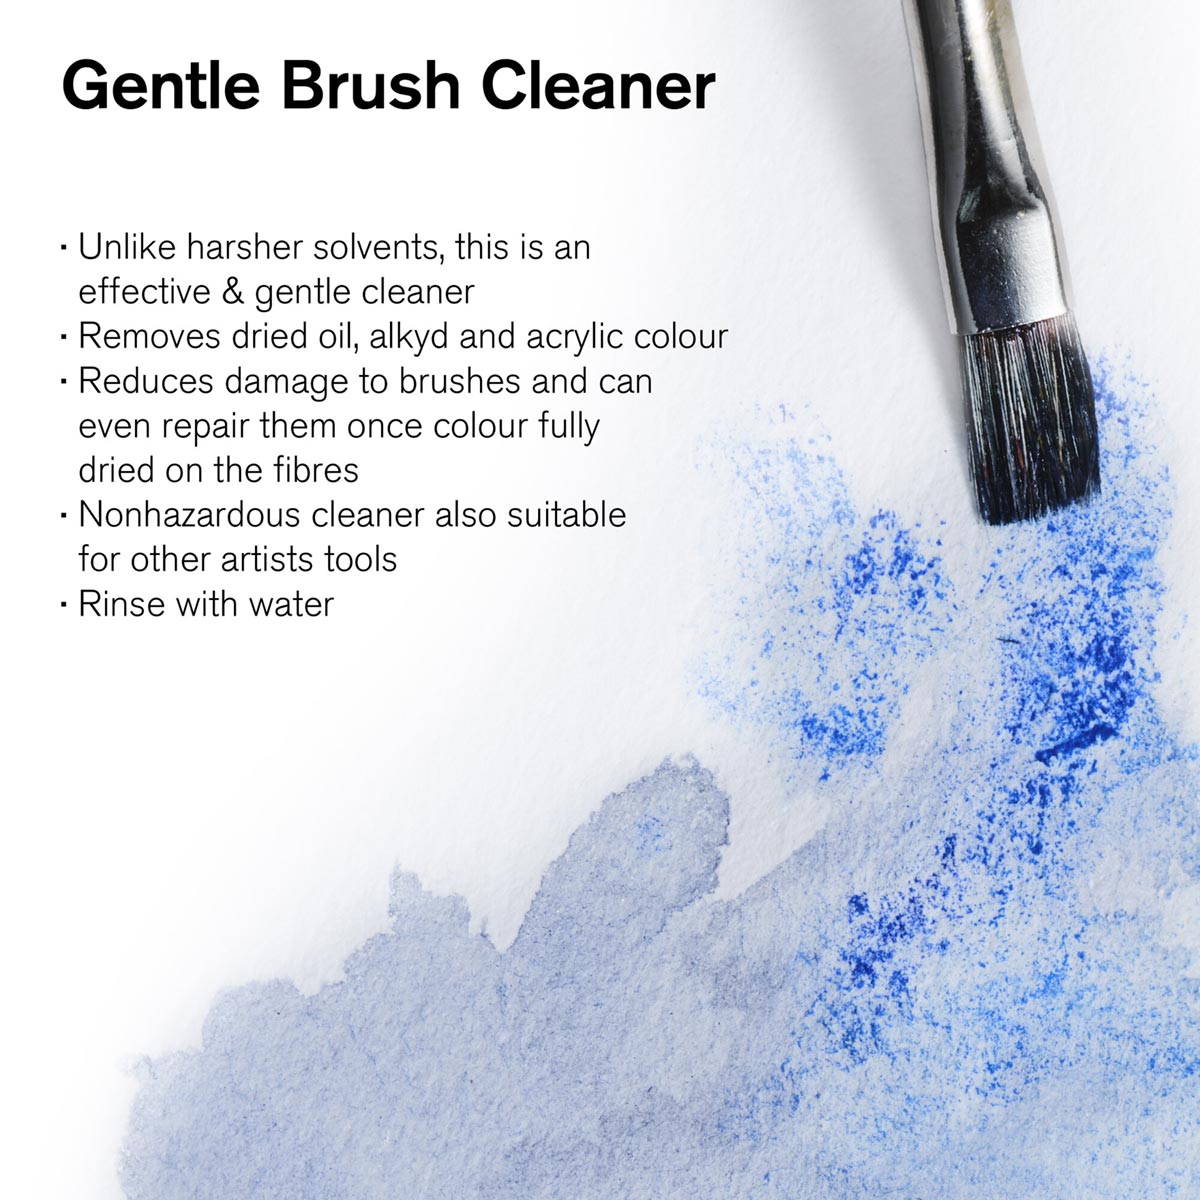 Winsor et Newton - Cleaner Brush - 500 ml